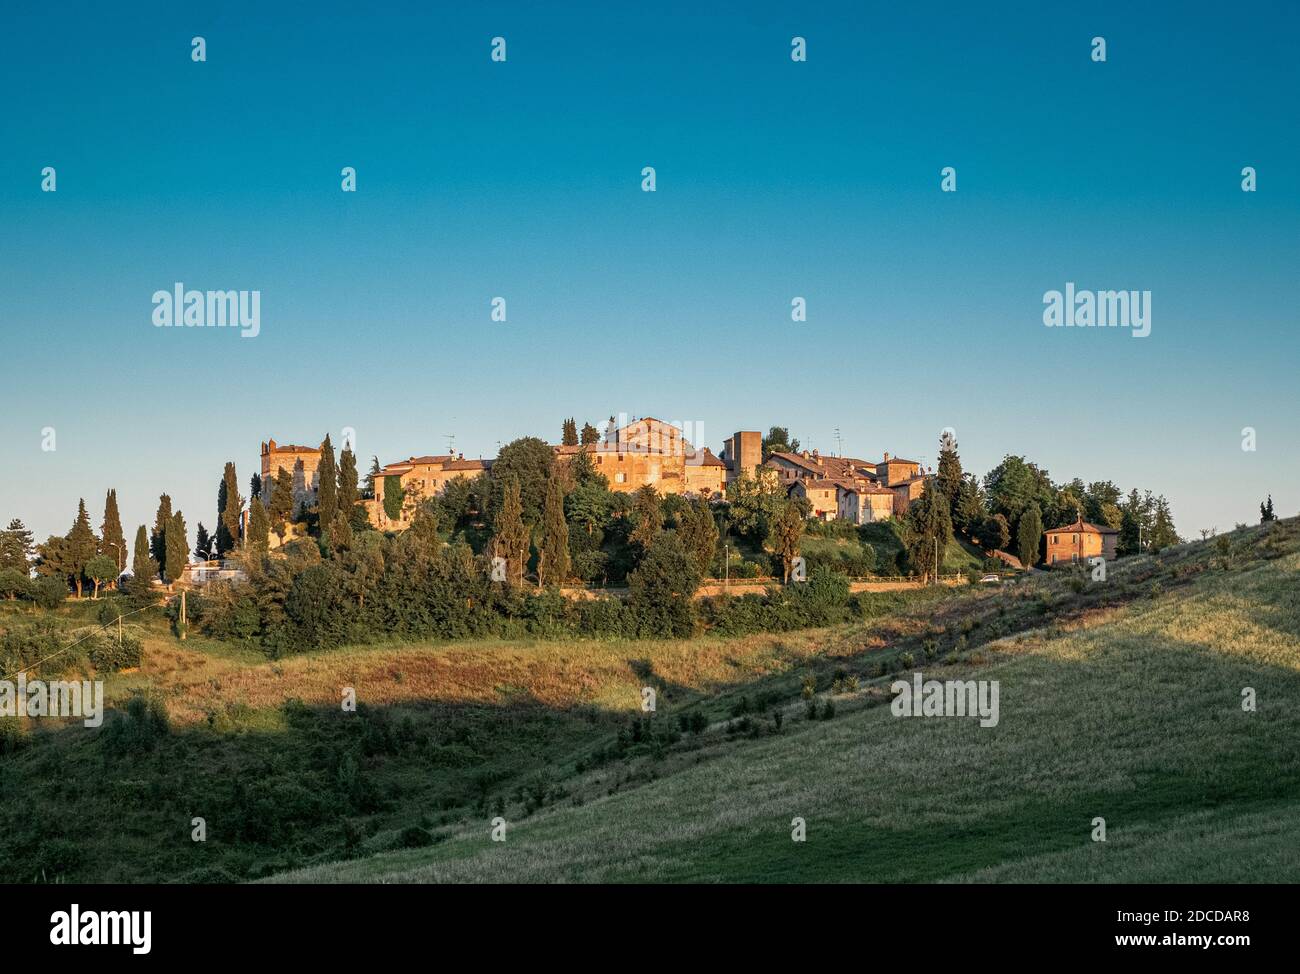 Castello di Serravalle (Schloss von Serravalle), typisches mittelalterliches Dorf auf dem Lande. Bologna Provinz, Emilia und Romagna, Italien. Stockfoto